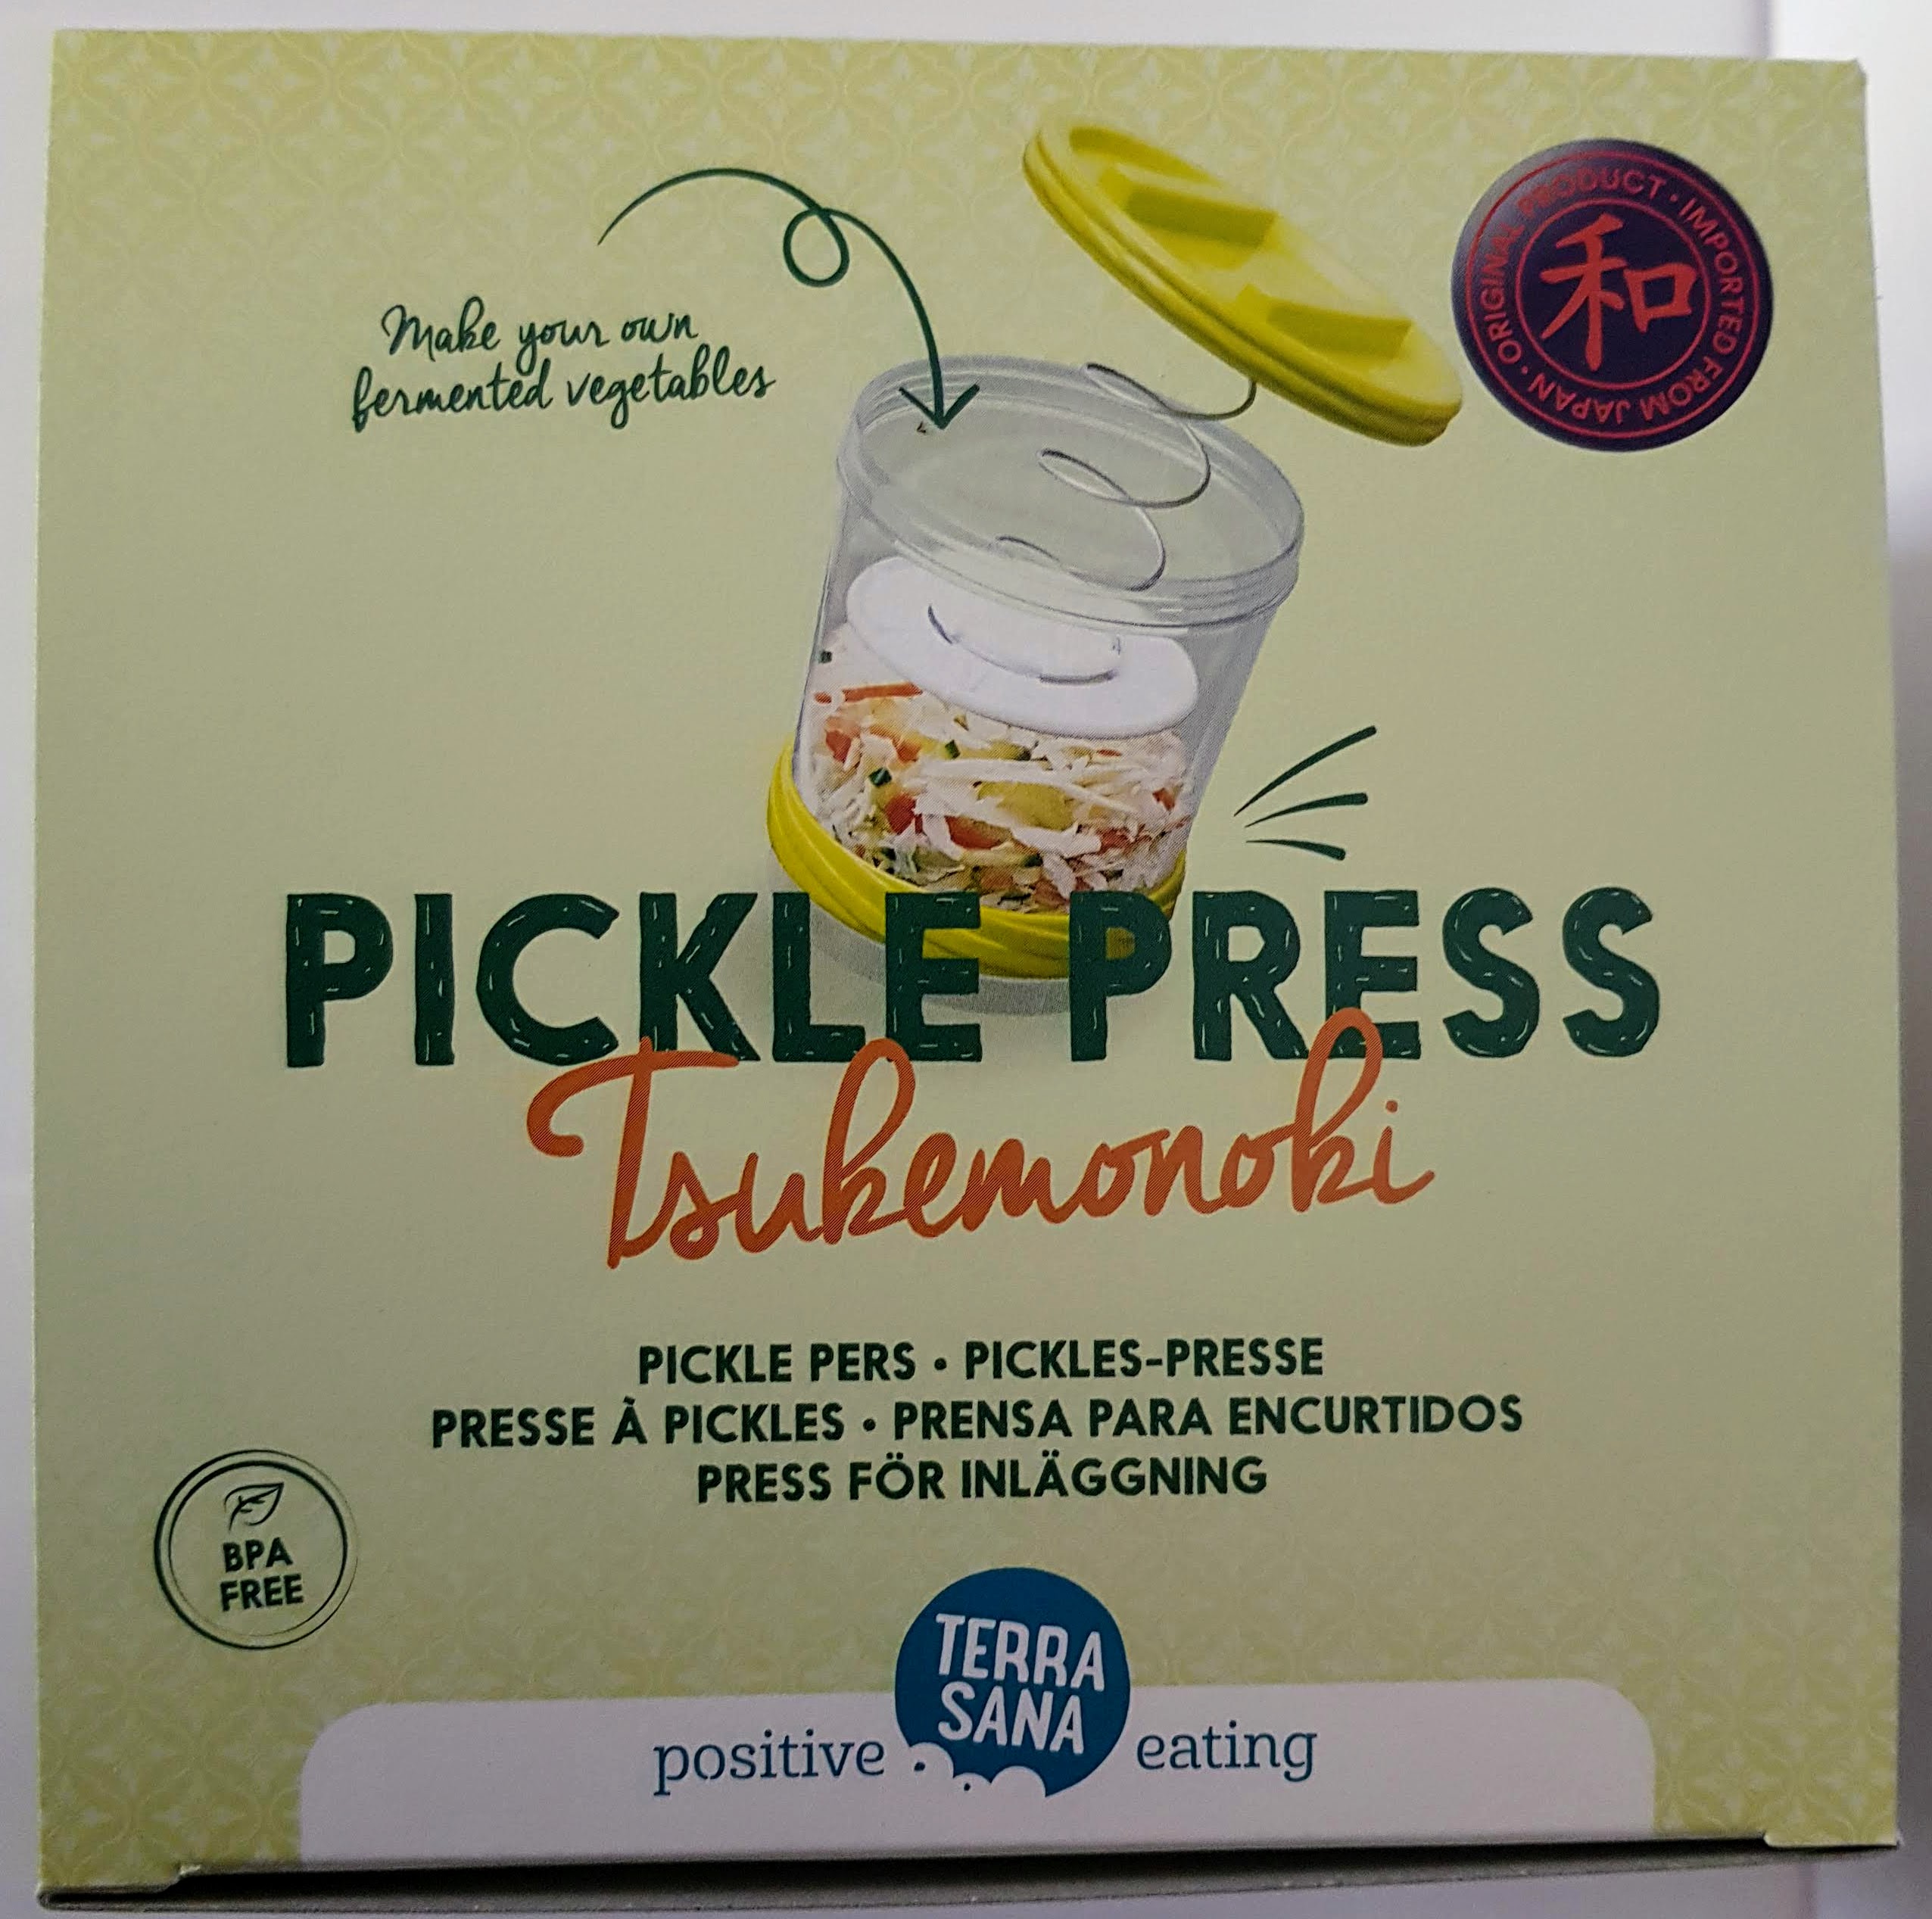 Tsukemonoki (Pickles-Presse, Salatpresse, Kunststoff, etwa 1,2l)